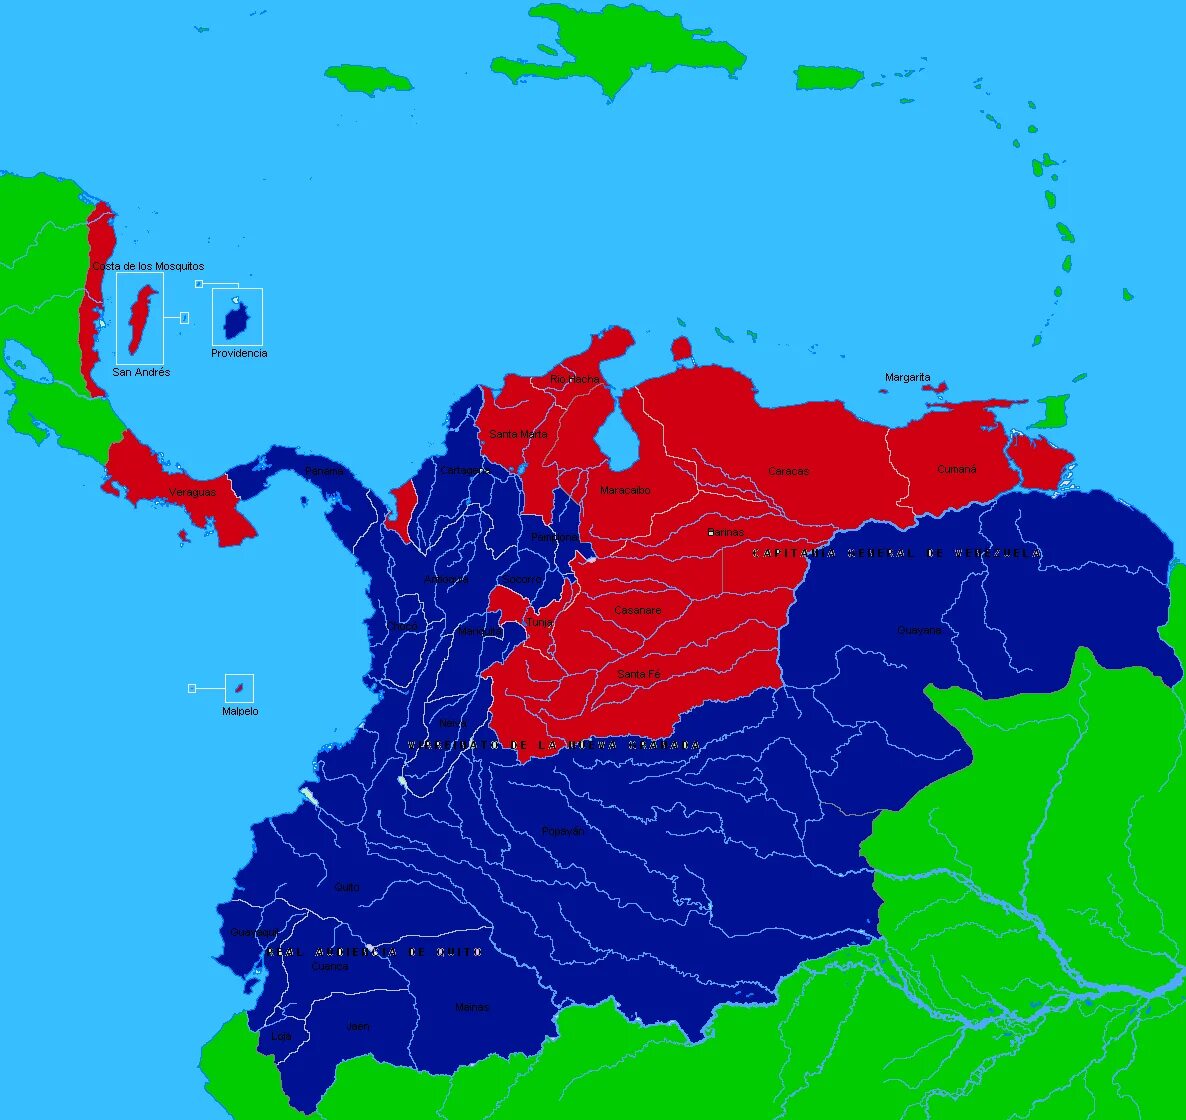 Вице-королевство новая Гранада. Великая Колумбия. Новая Гранада на карте.